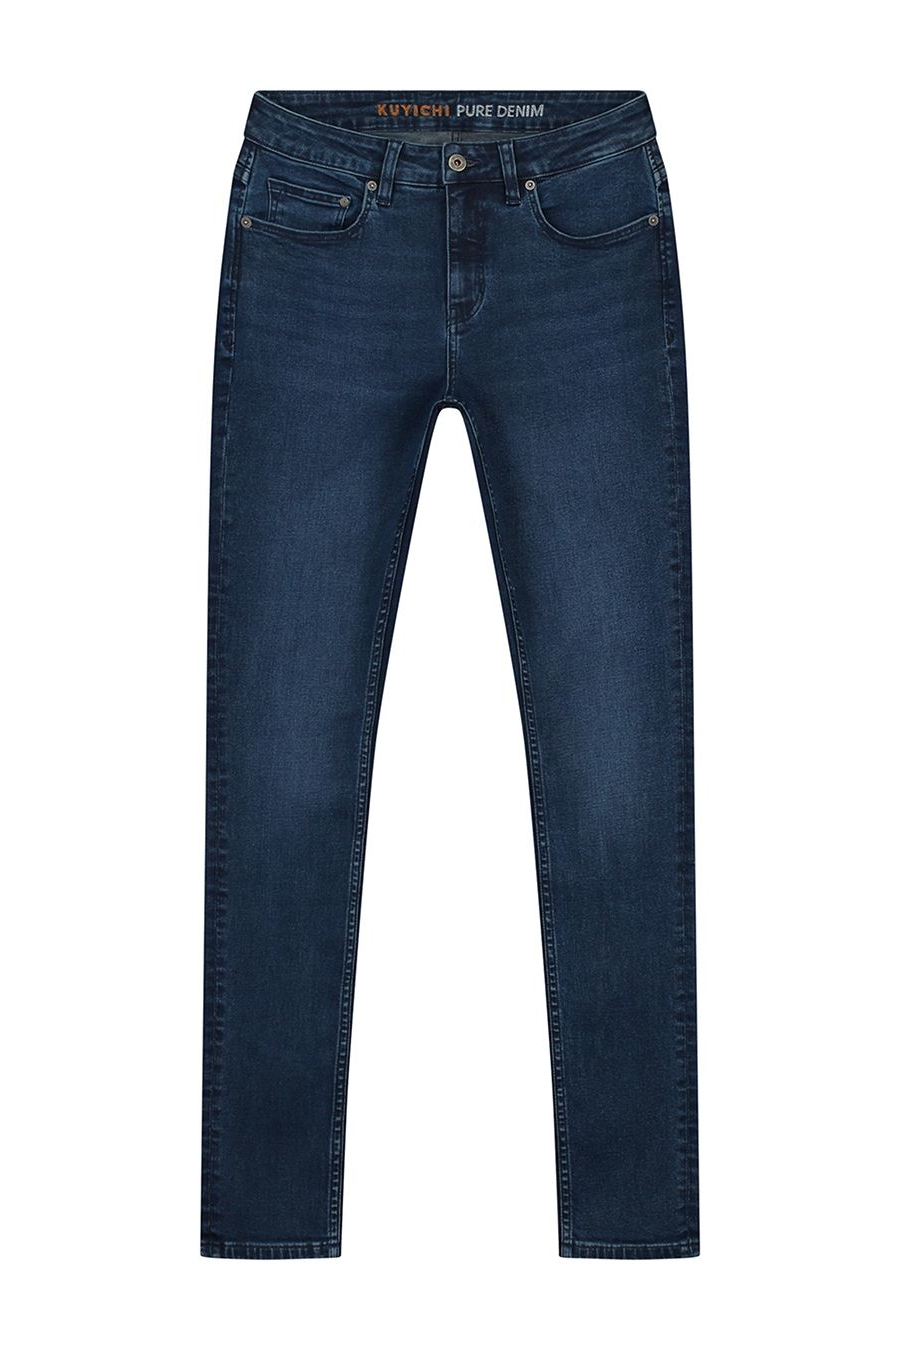 Kuyichi Jeans Carey Skinny True Blue 7